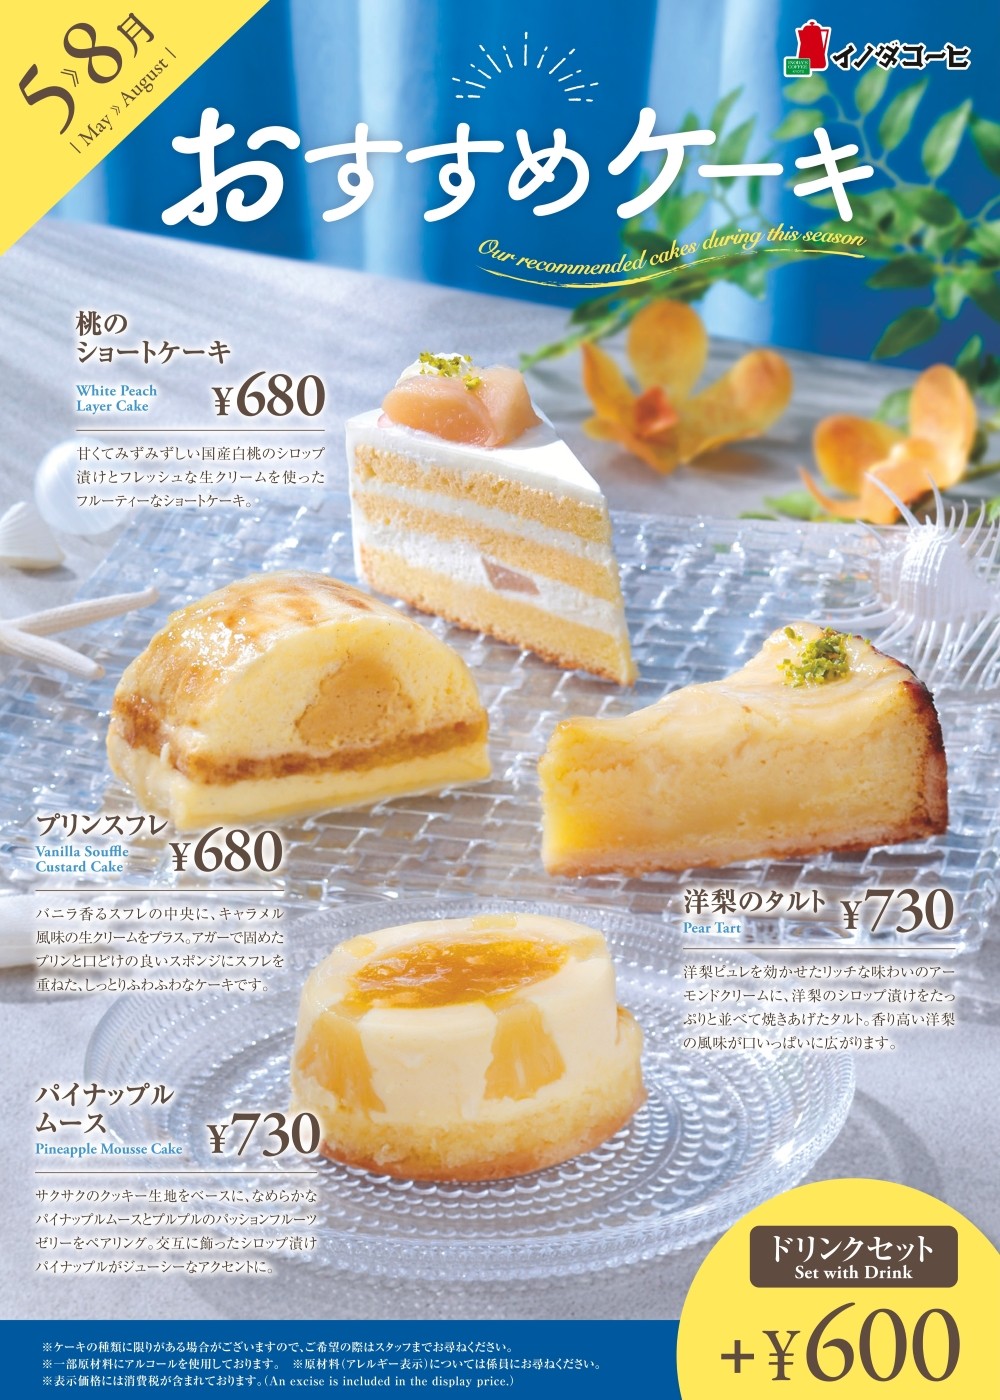 5月からのおすすめのケーキ各種・ドリンクセット+600円